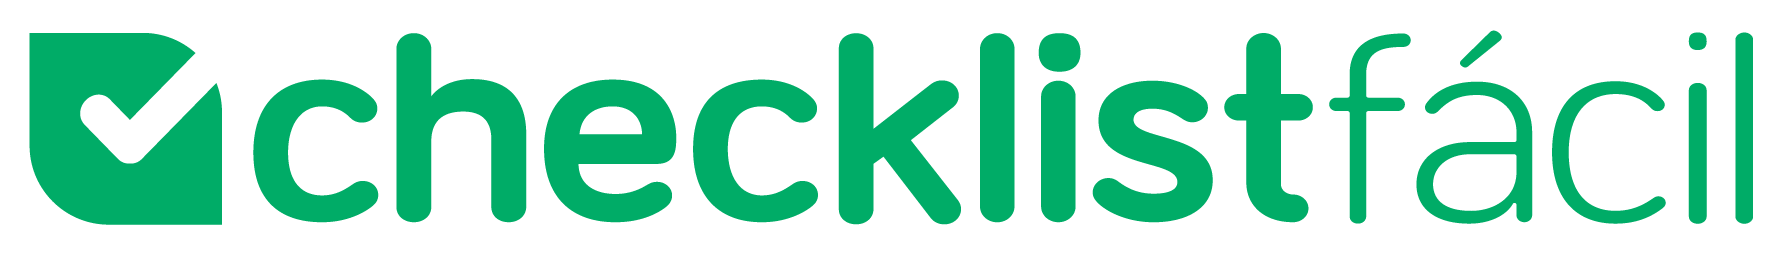 logo_checklist_facil